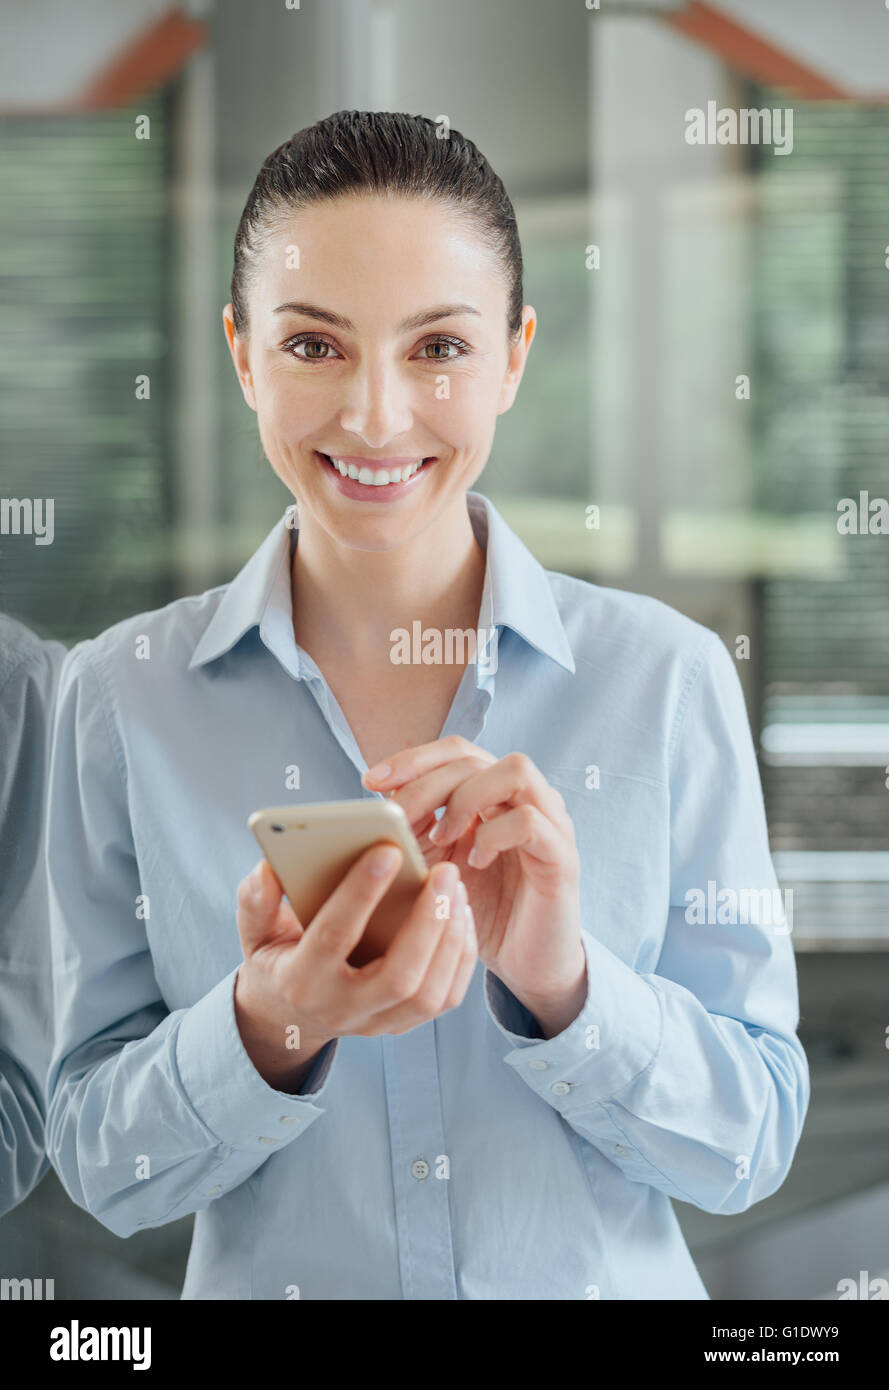 Belle jeune femme à l'aide d'un téléphone intelligent et s'appuyant sur une fenêtre, elle est smiling at camera Banque D'Images